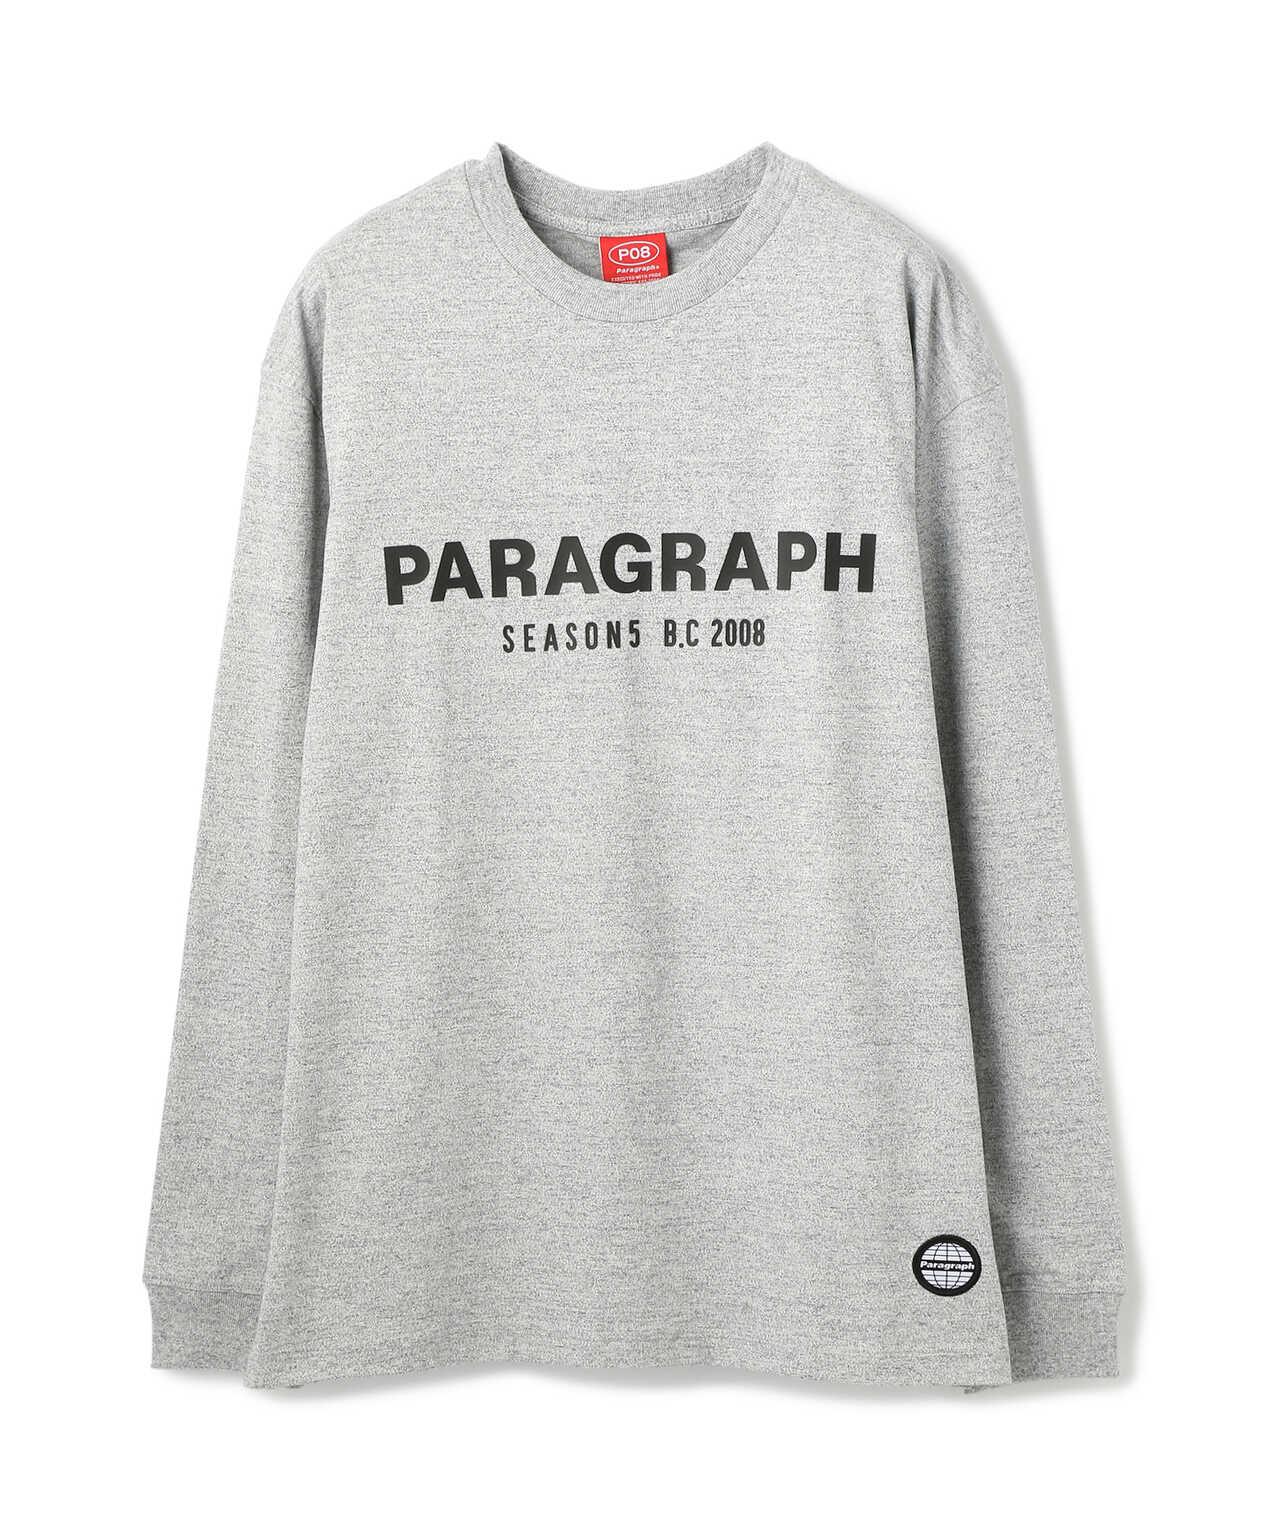 Paragraph/パラグラフ/ロゴプリントロングスリーブTシャツ/Seasons L/S Tee